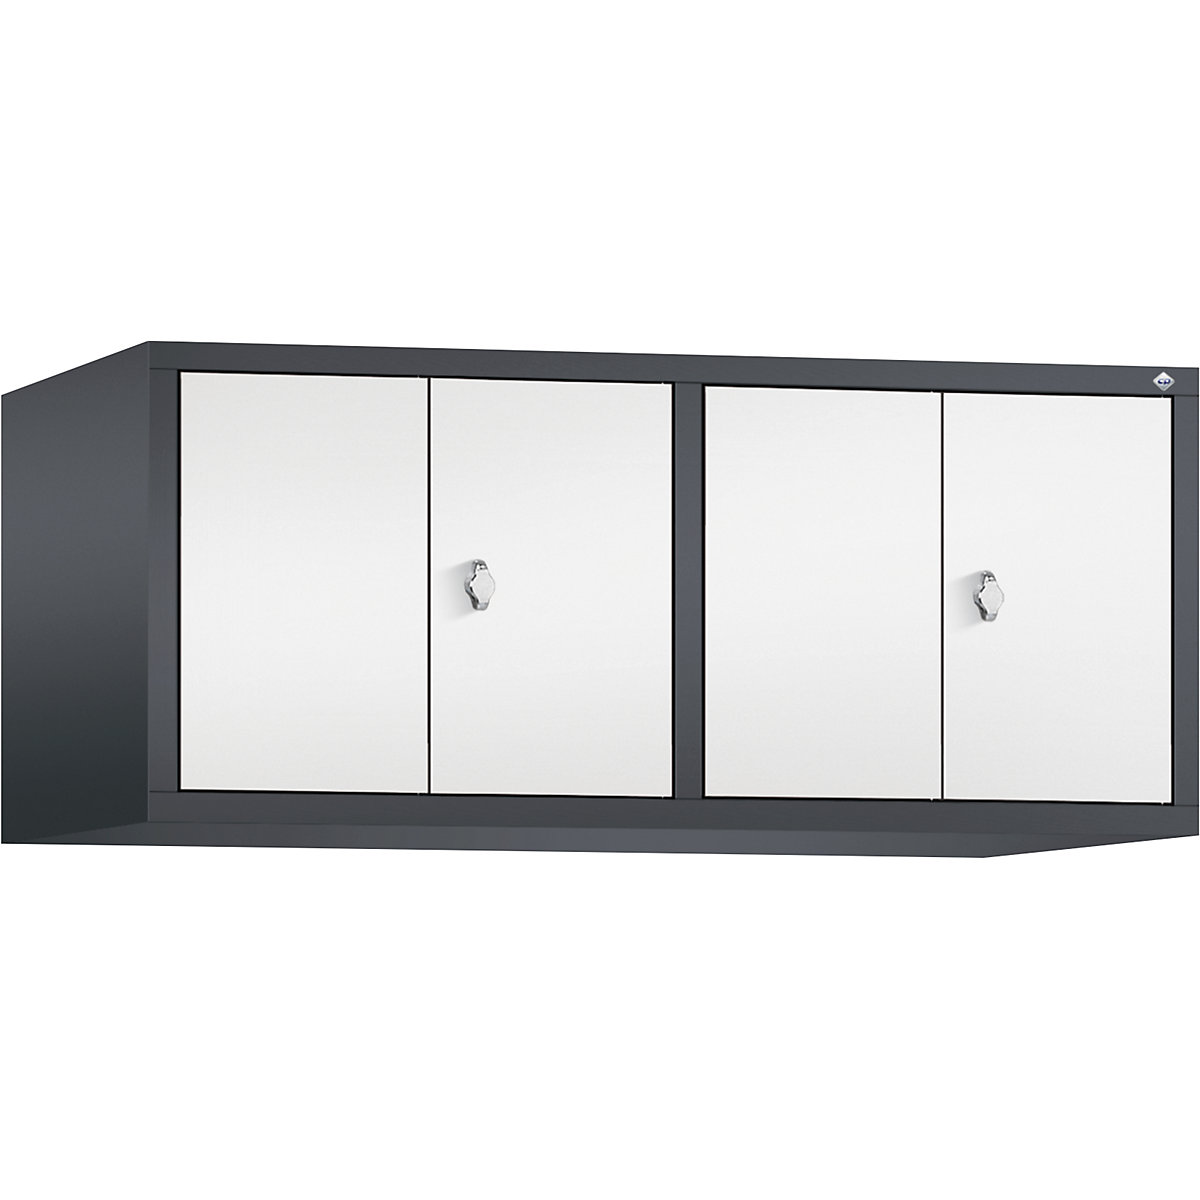 C+P – Altillo CLASSIC, puertas batientes que cierran al ras entre sí, 4 compartimentos, anchura de compartimento 300 mm, gris negruzco / blanco tráfico